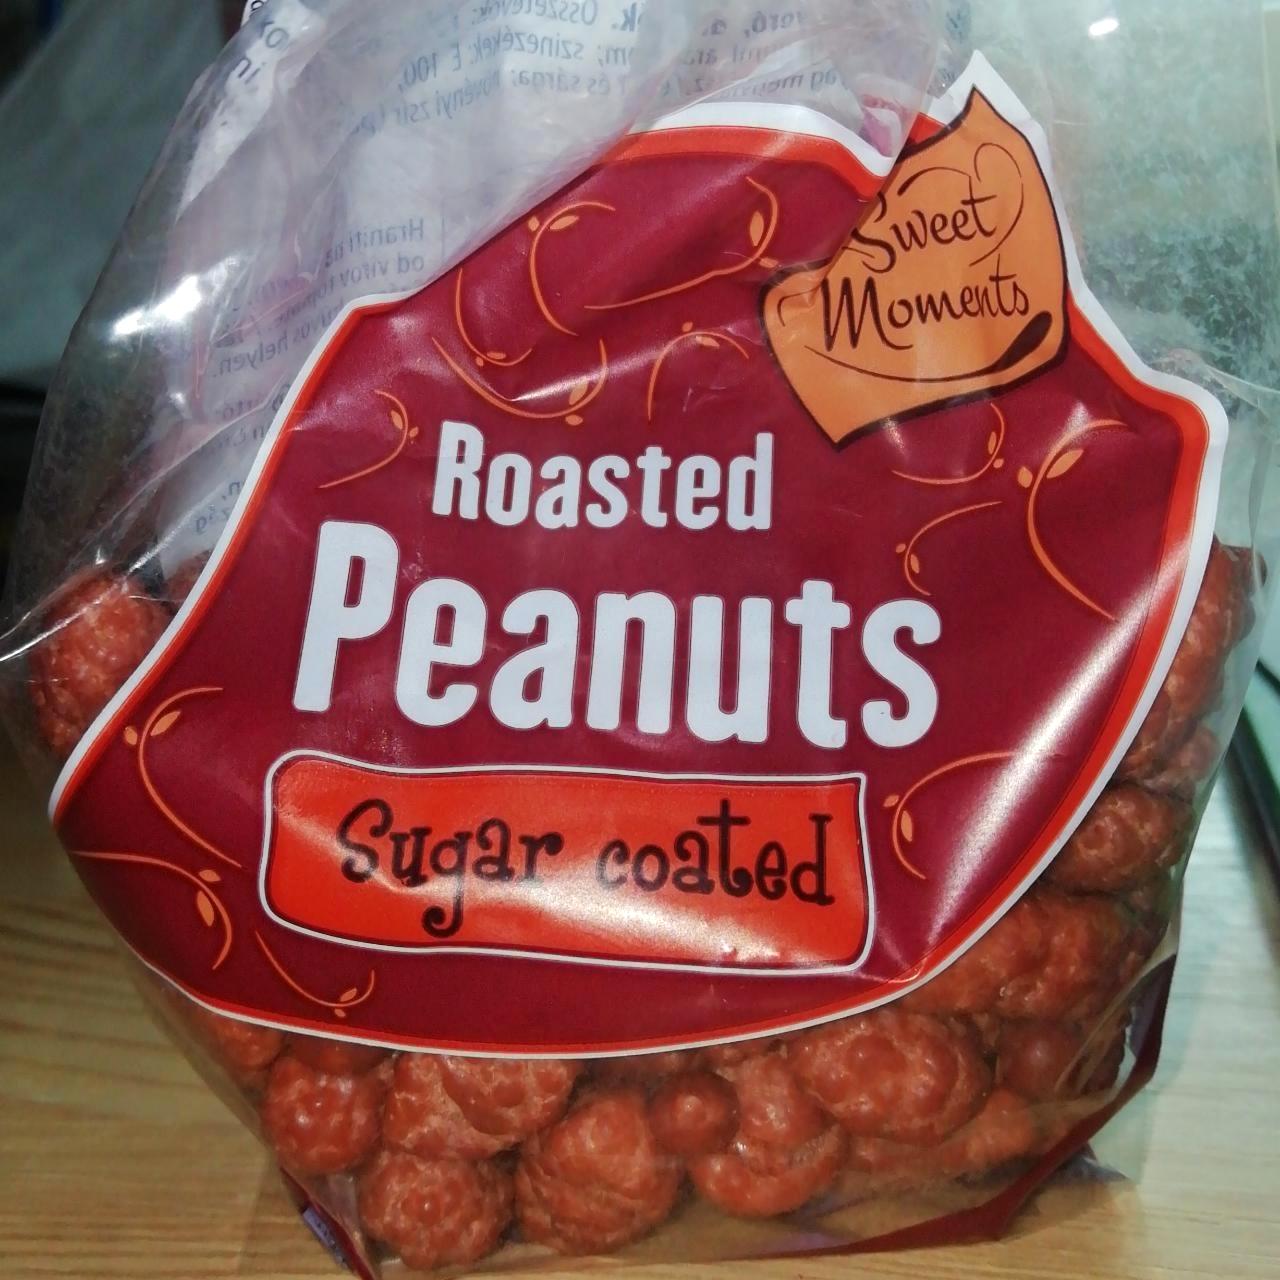 Képek - Roasted peanuts sugar coated Sweet Moments